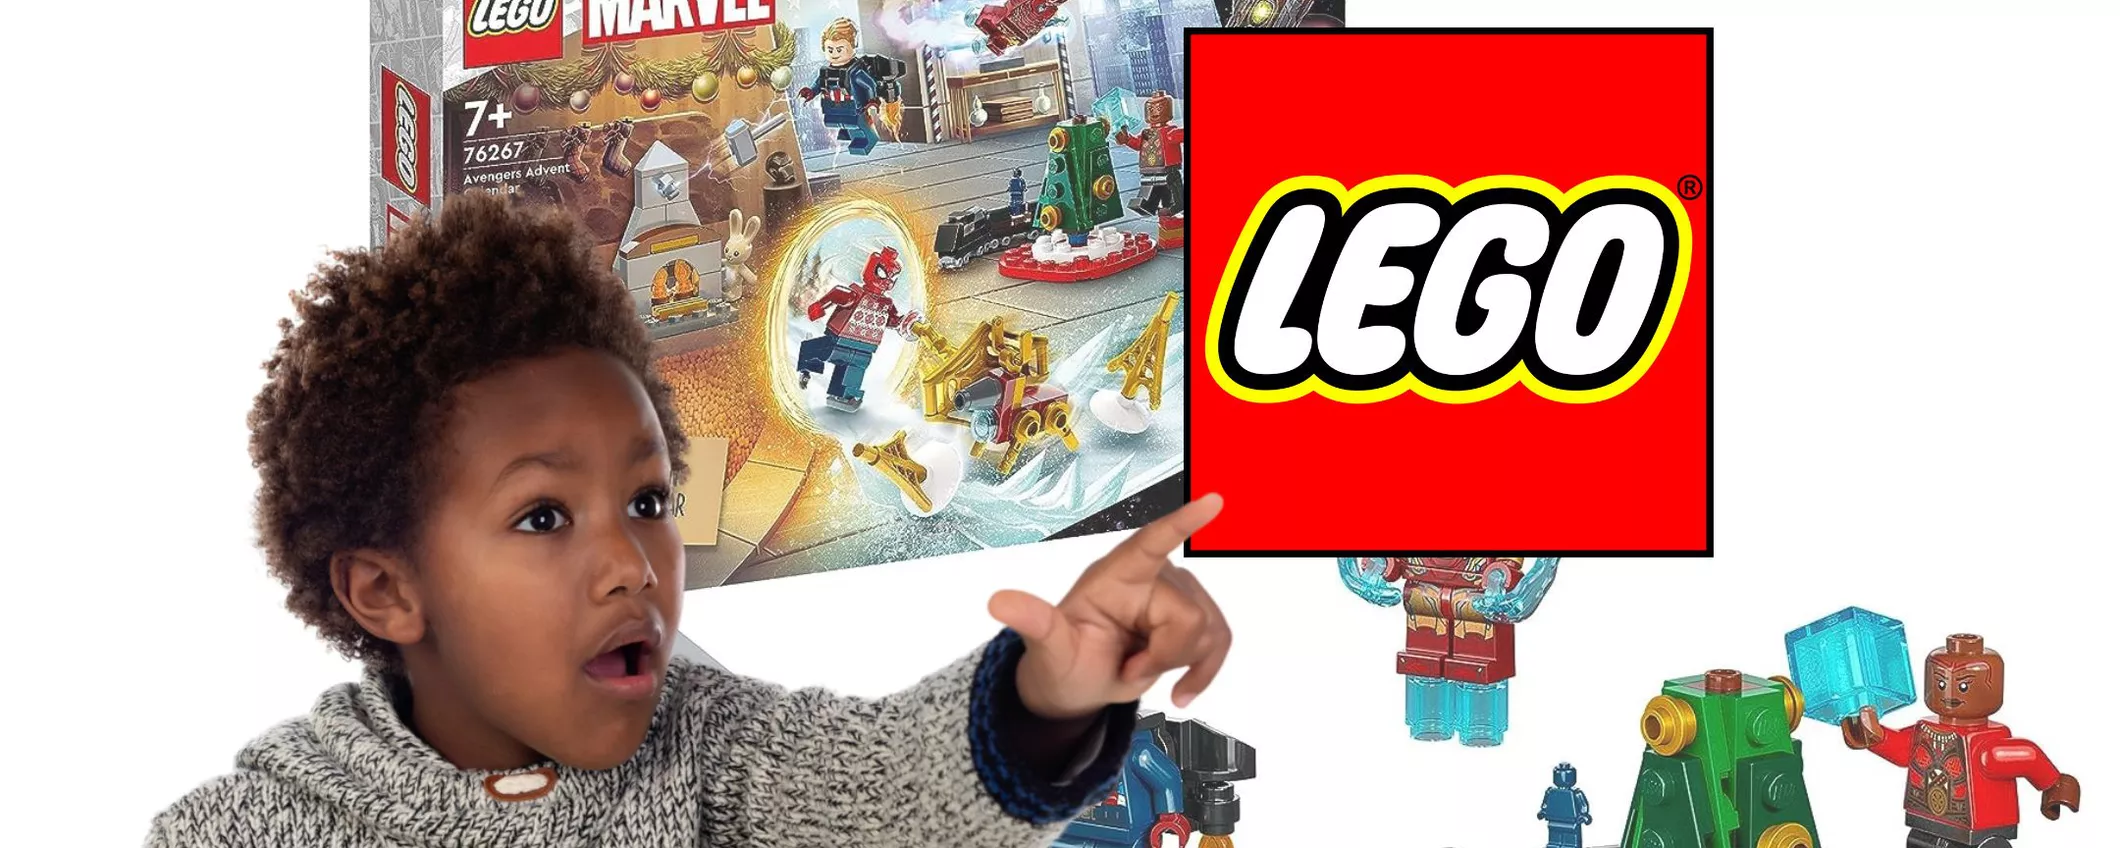 LEGO MARVEL: Calendario dell'avvento divertente a prezzo SCIOCCANTE!